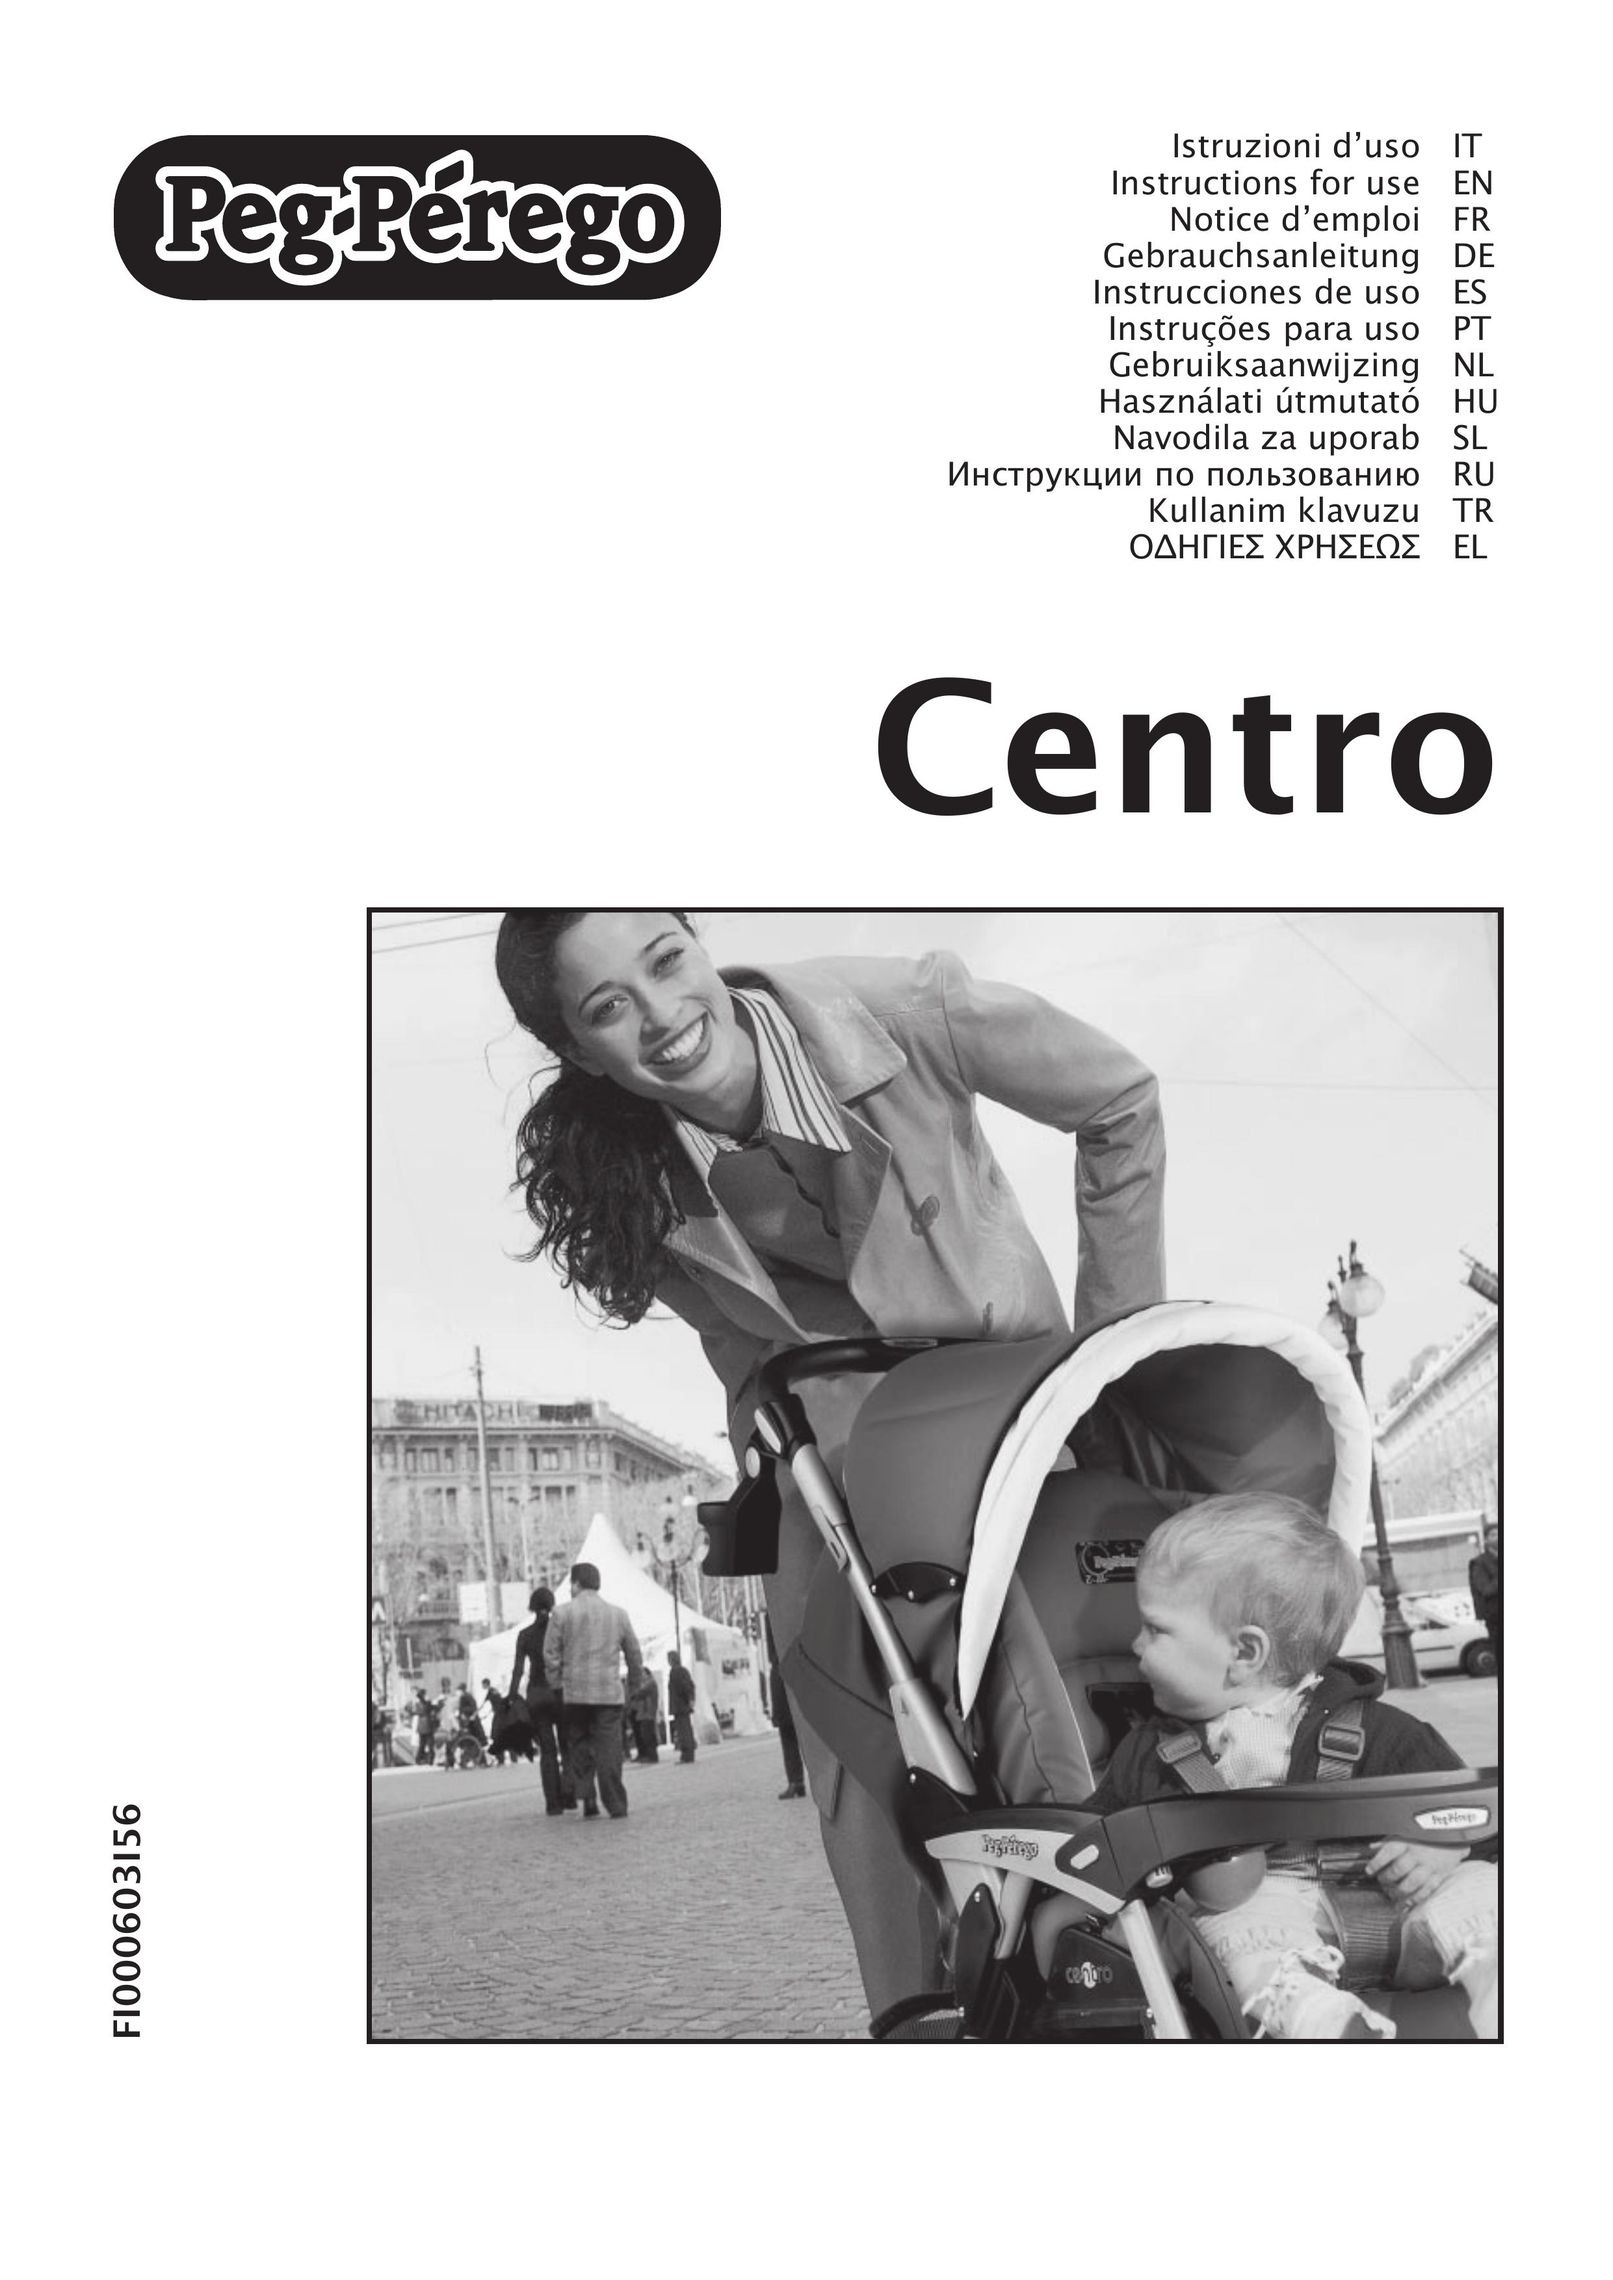 Peg-Perego Centro Stroller User Manual